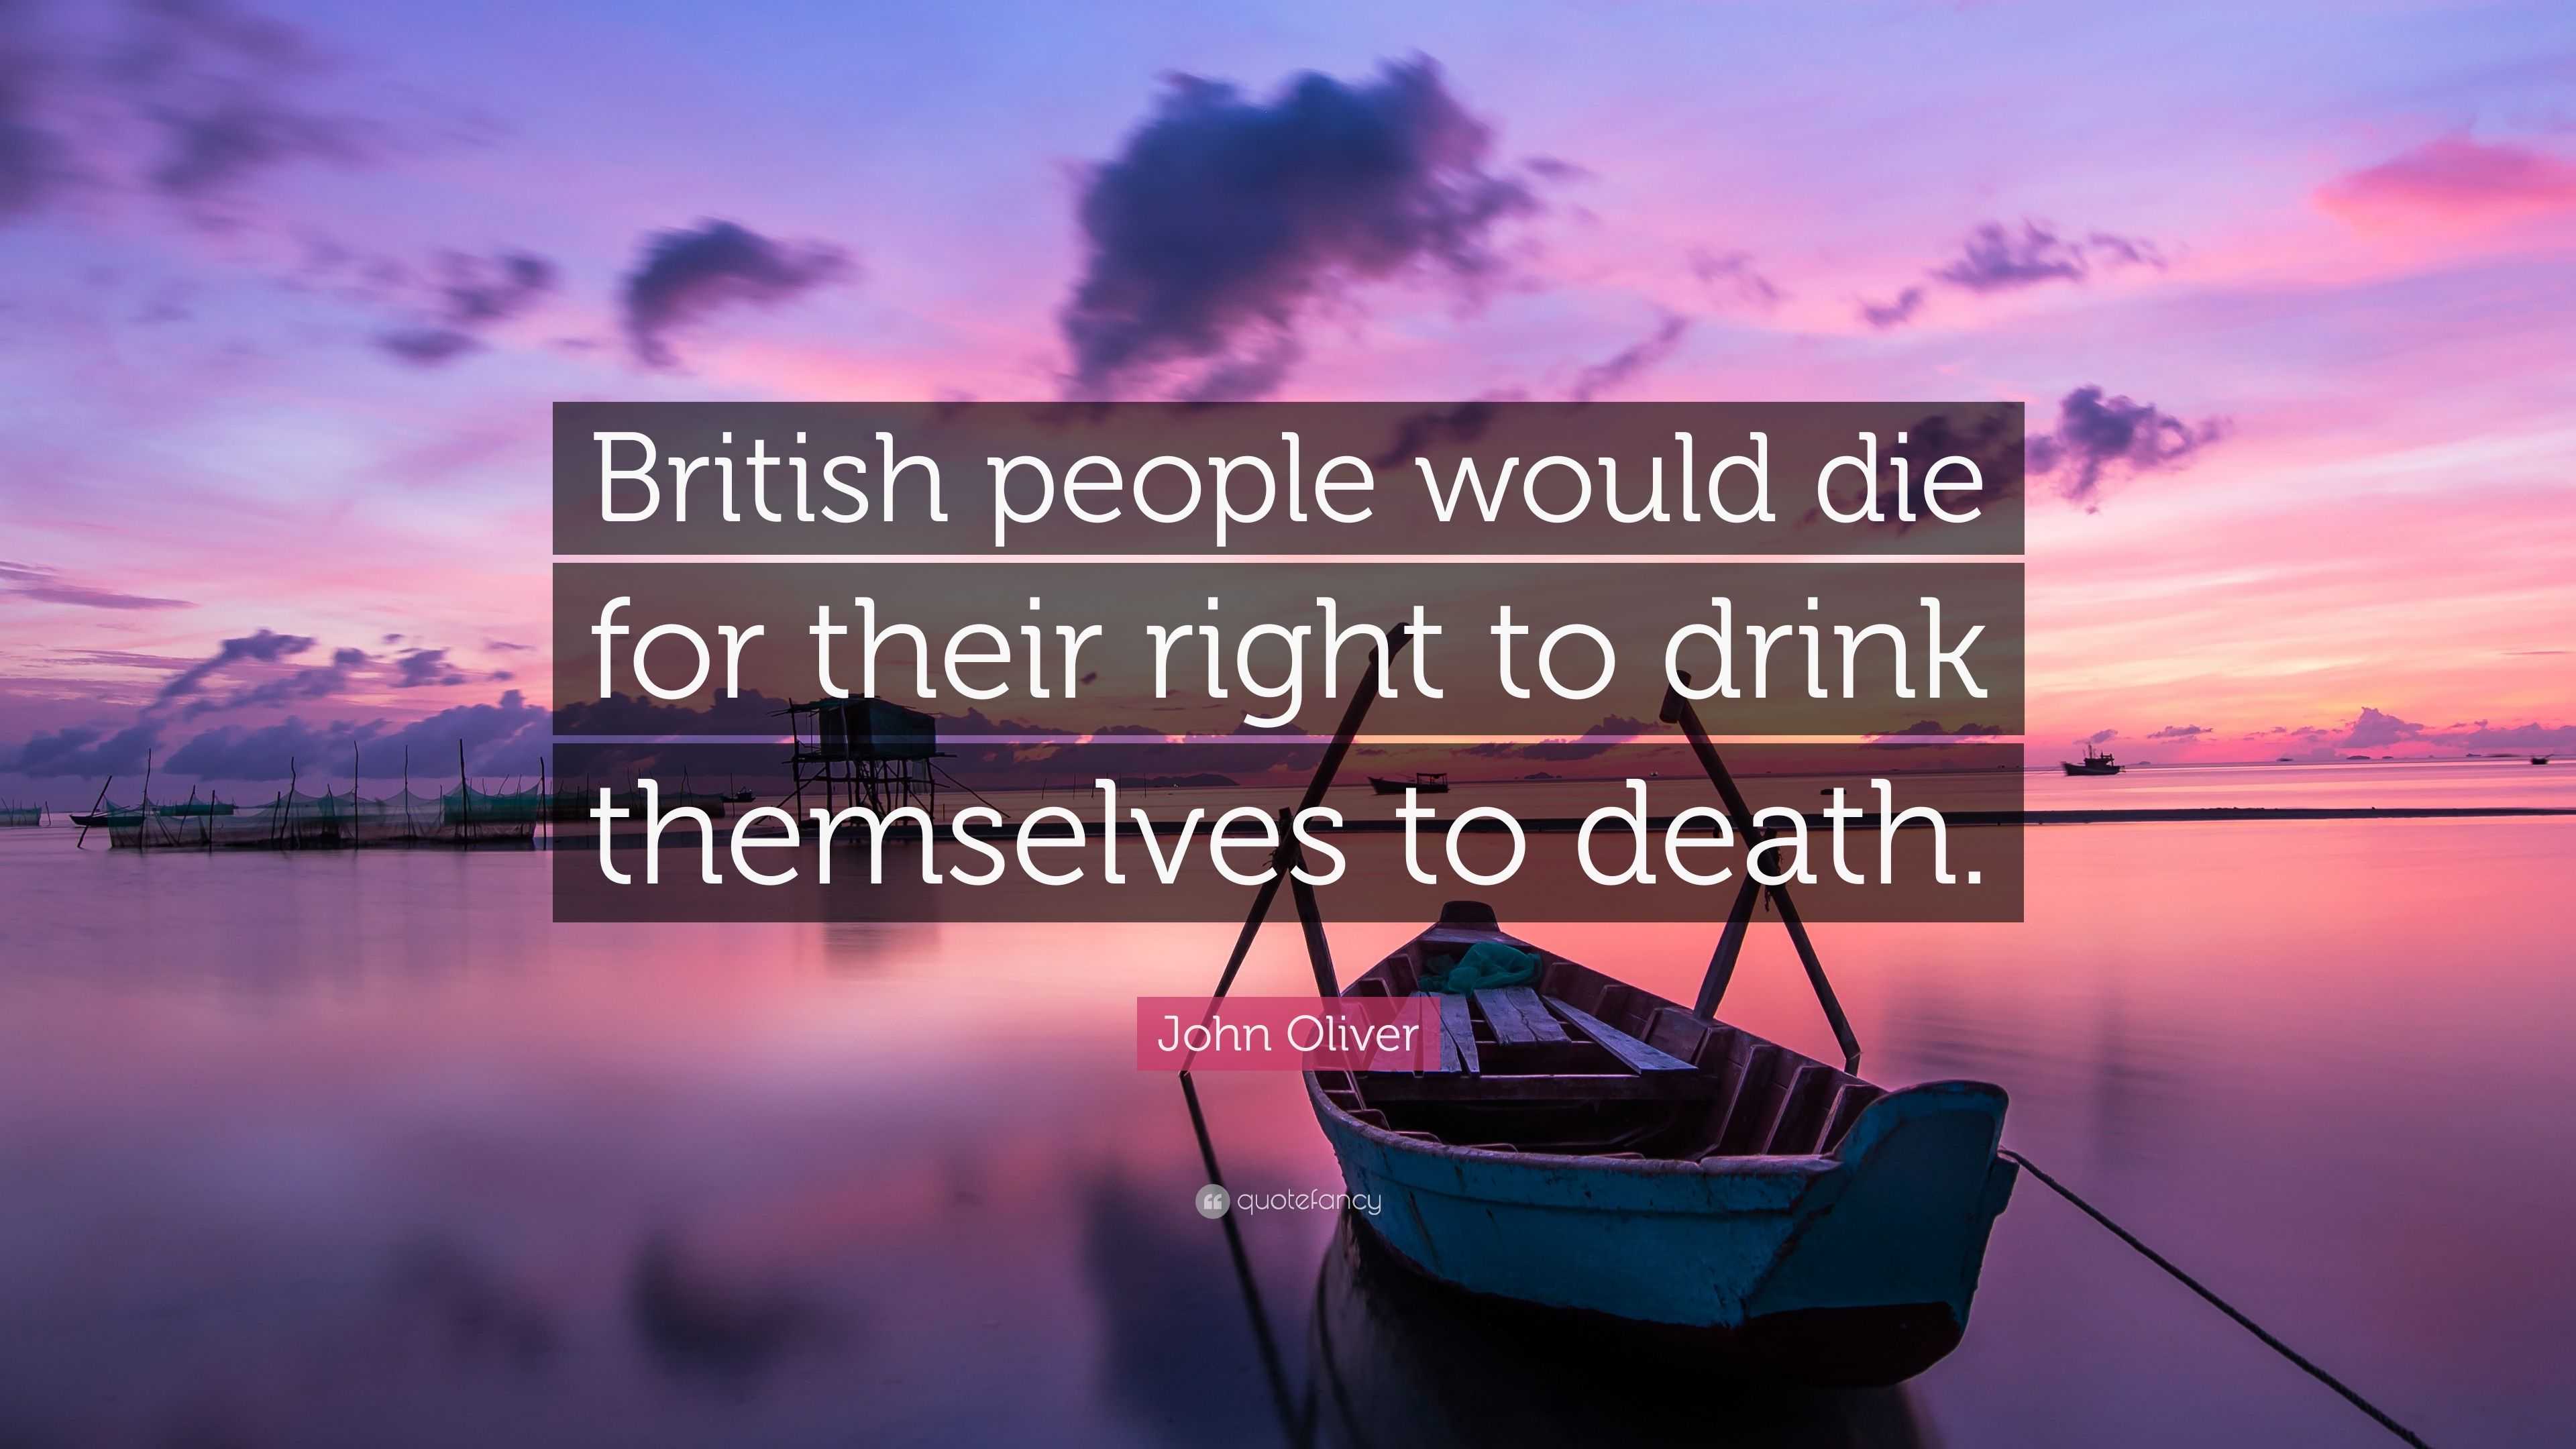 O Reino Unido descreve como "horrível" a morte de